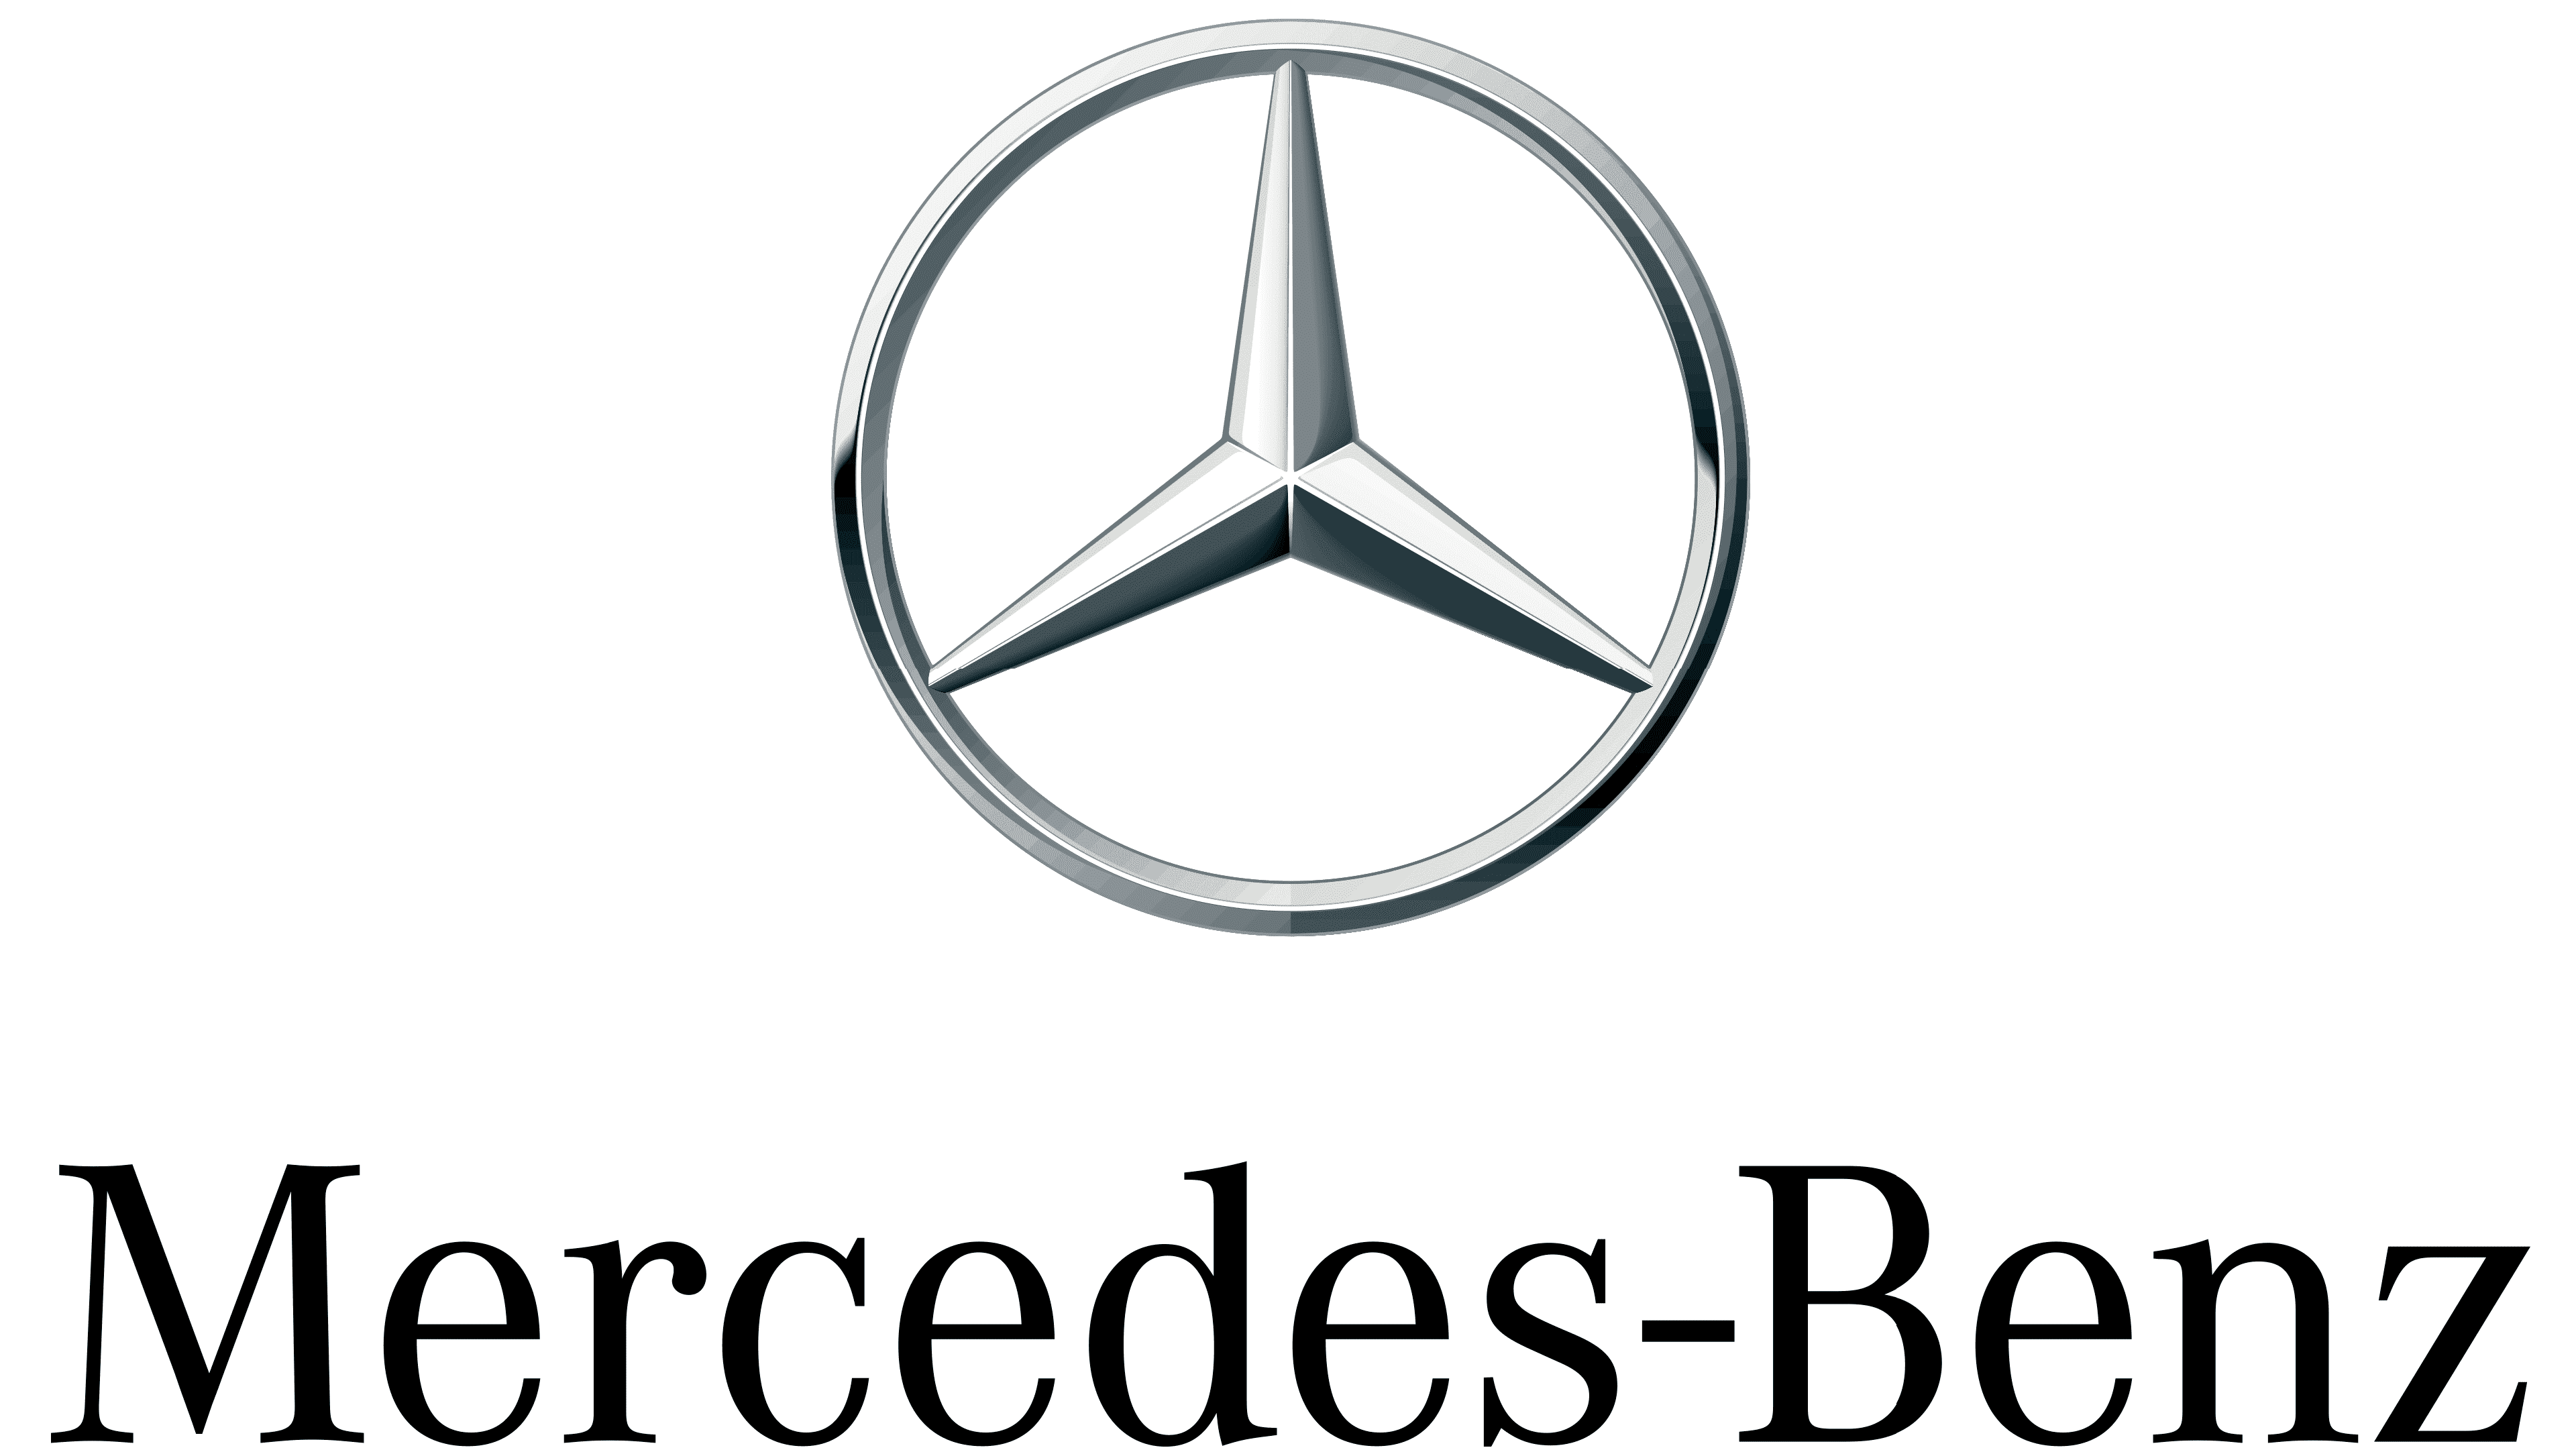 Dividendos y rentabilidad de las acciones de Mercedes